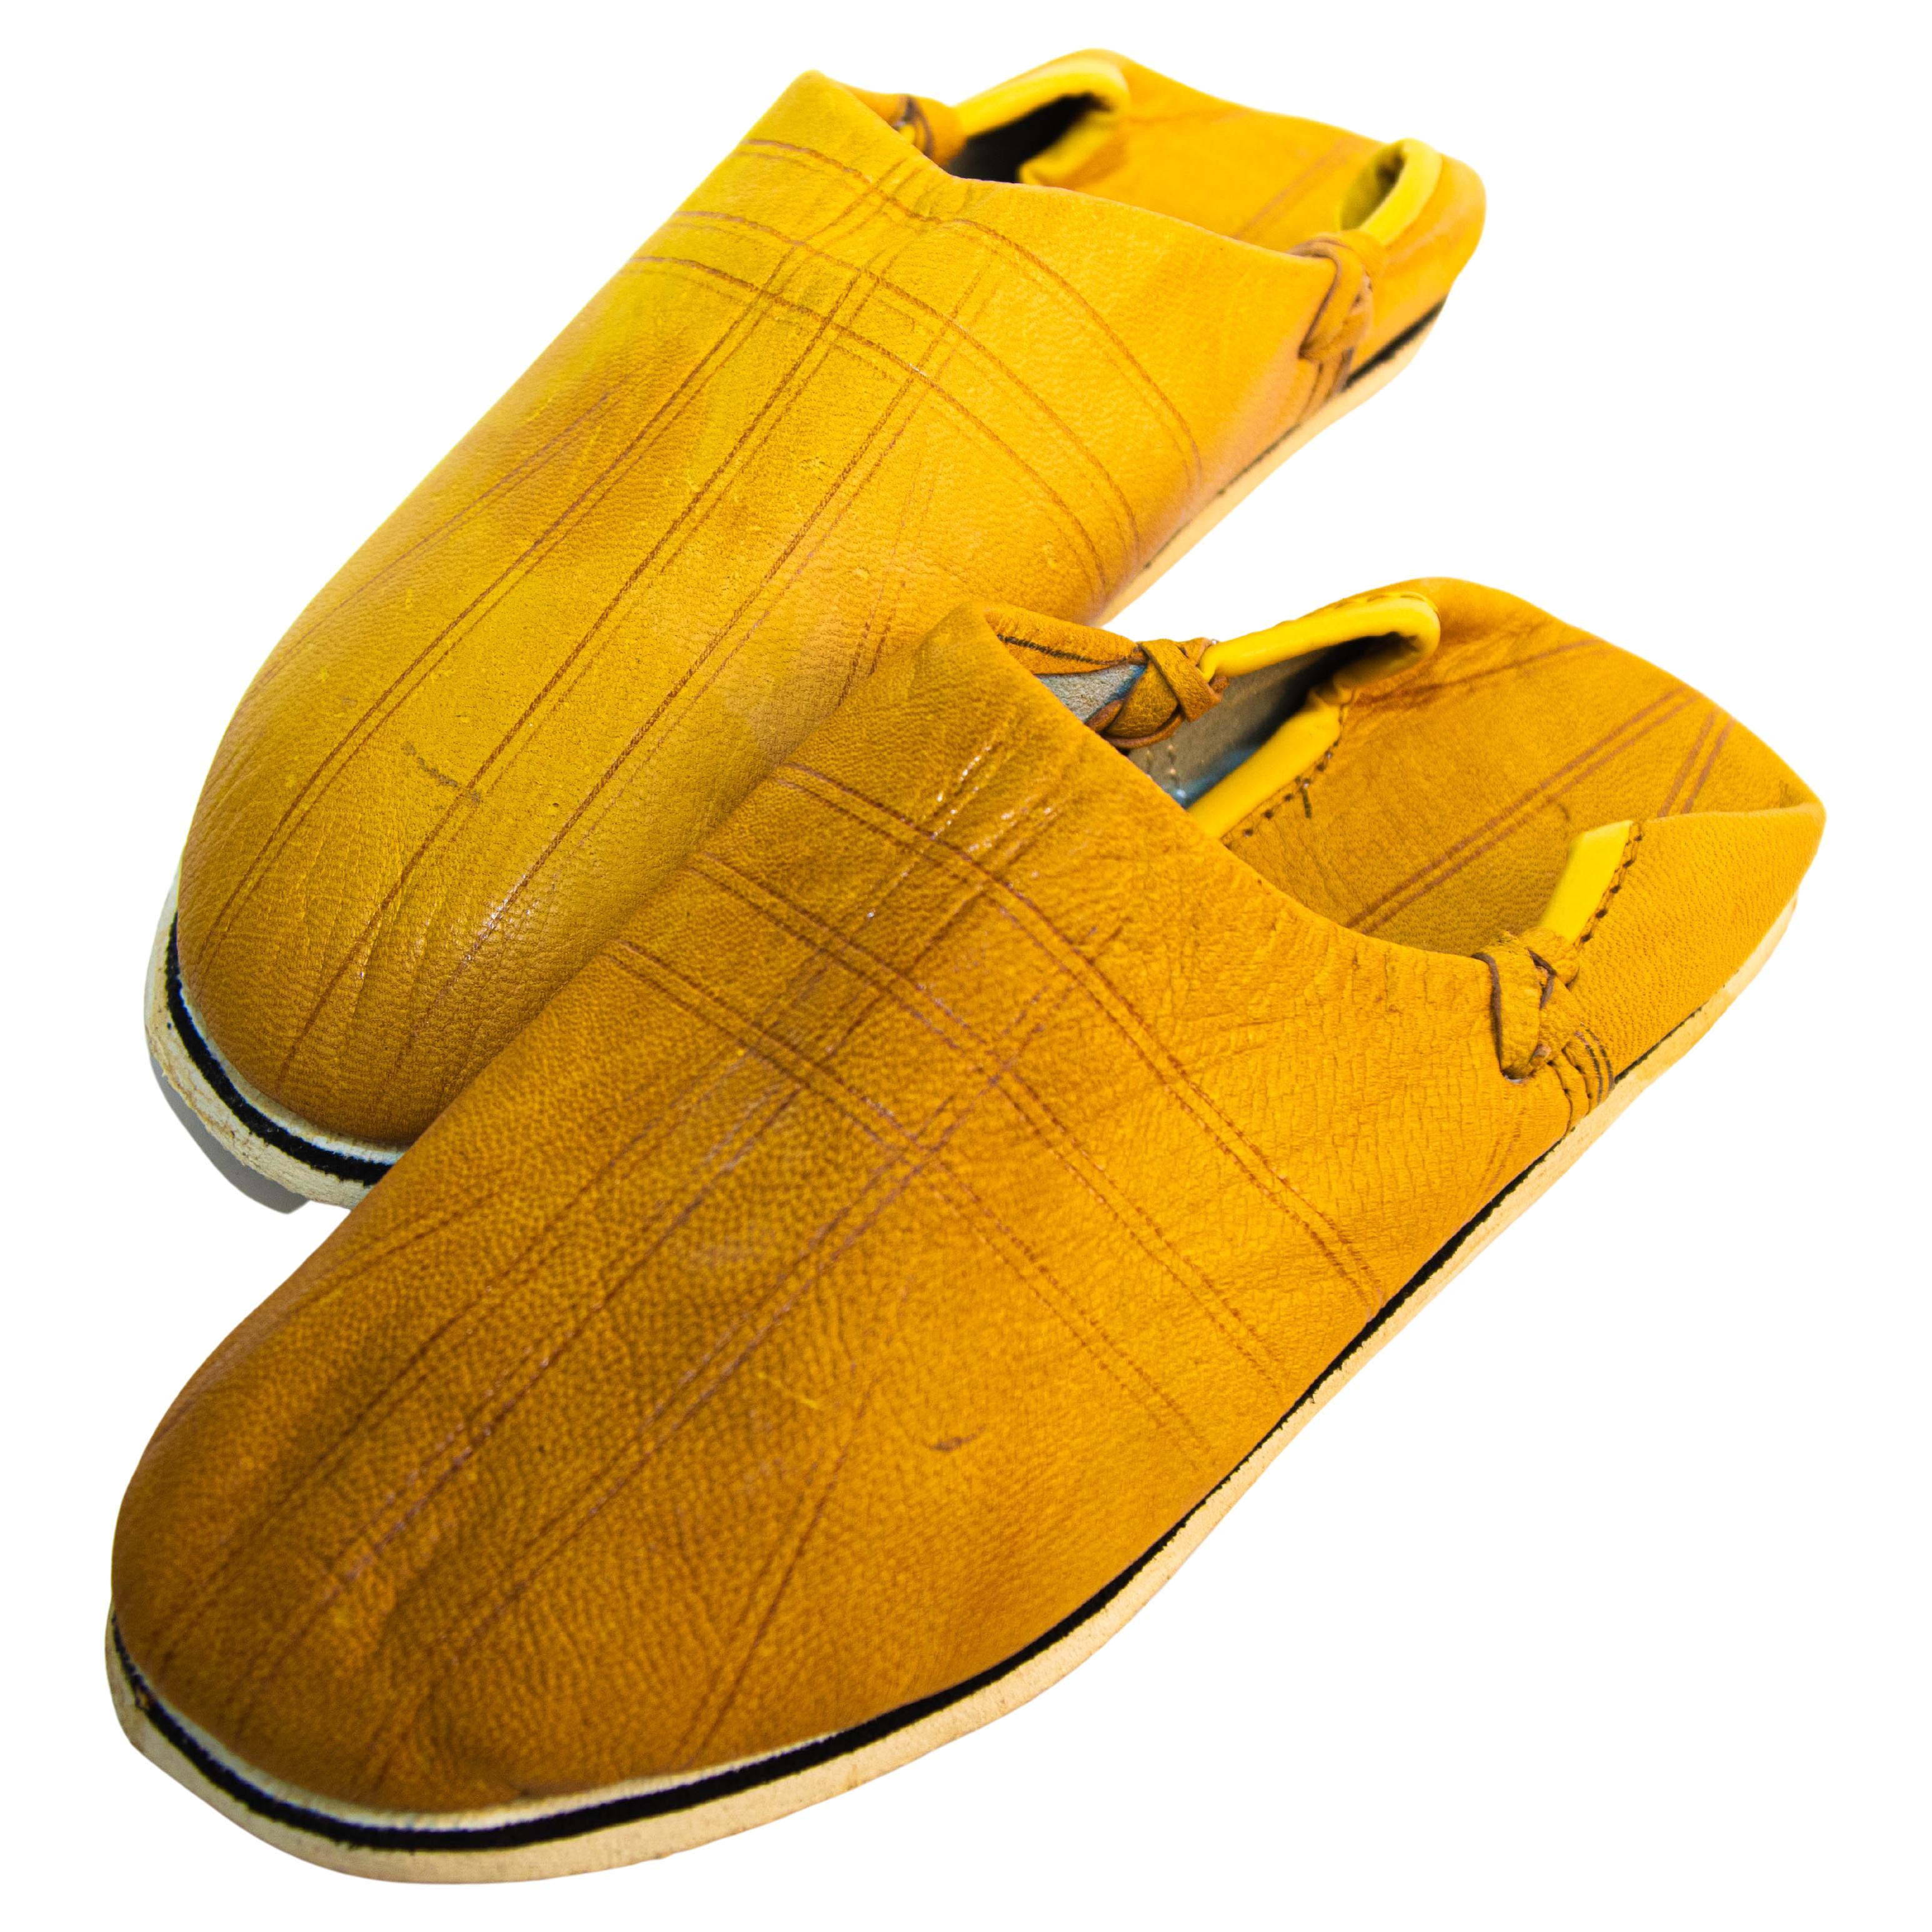 Babouches - Chaussures ethniques en cuir jaune travaillées à la main, marocaines en vente